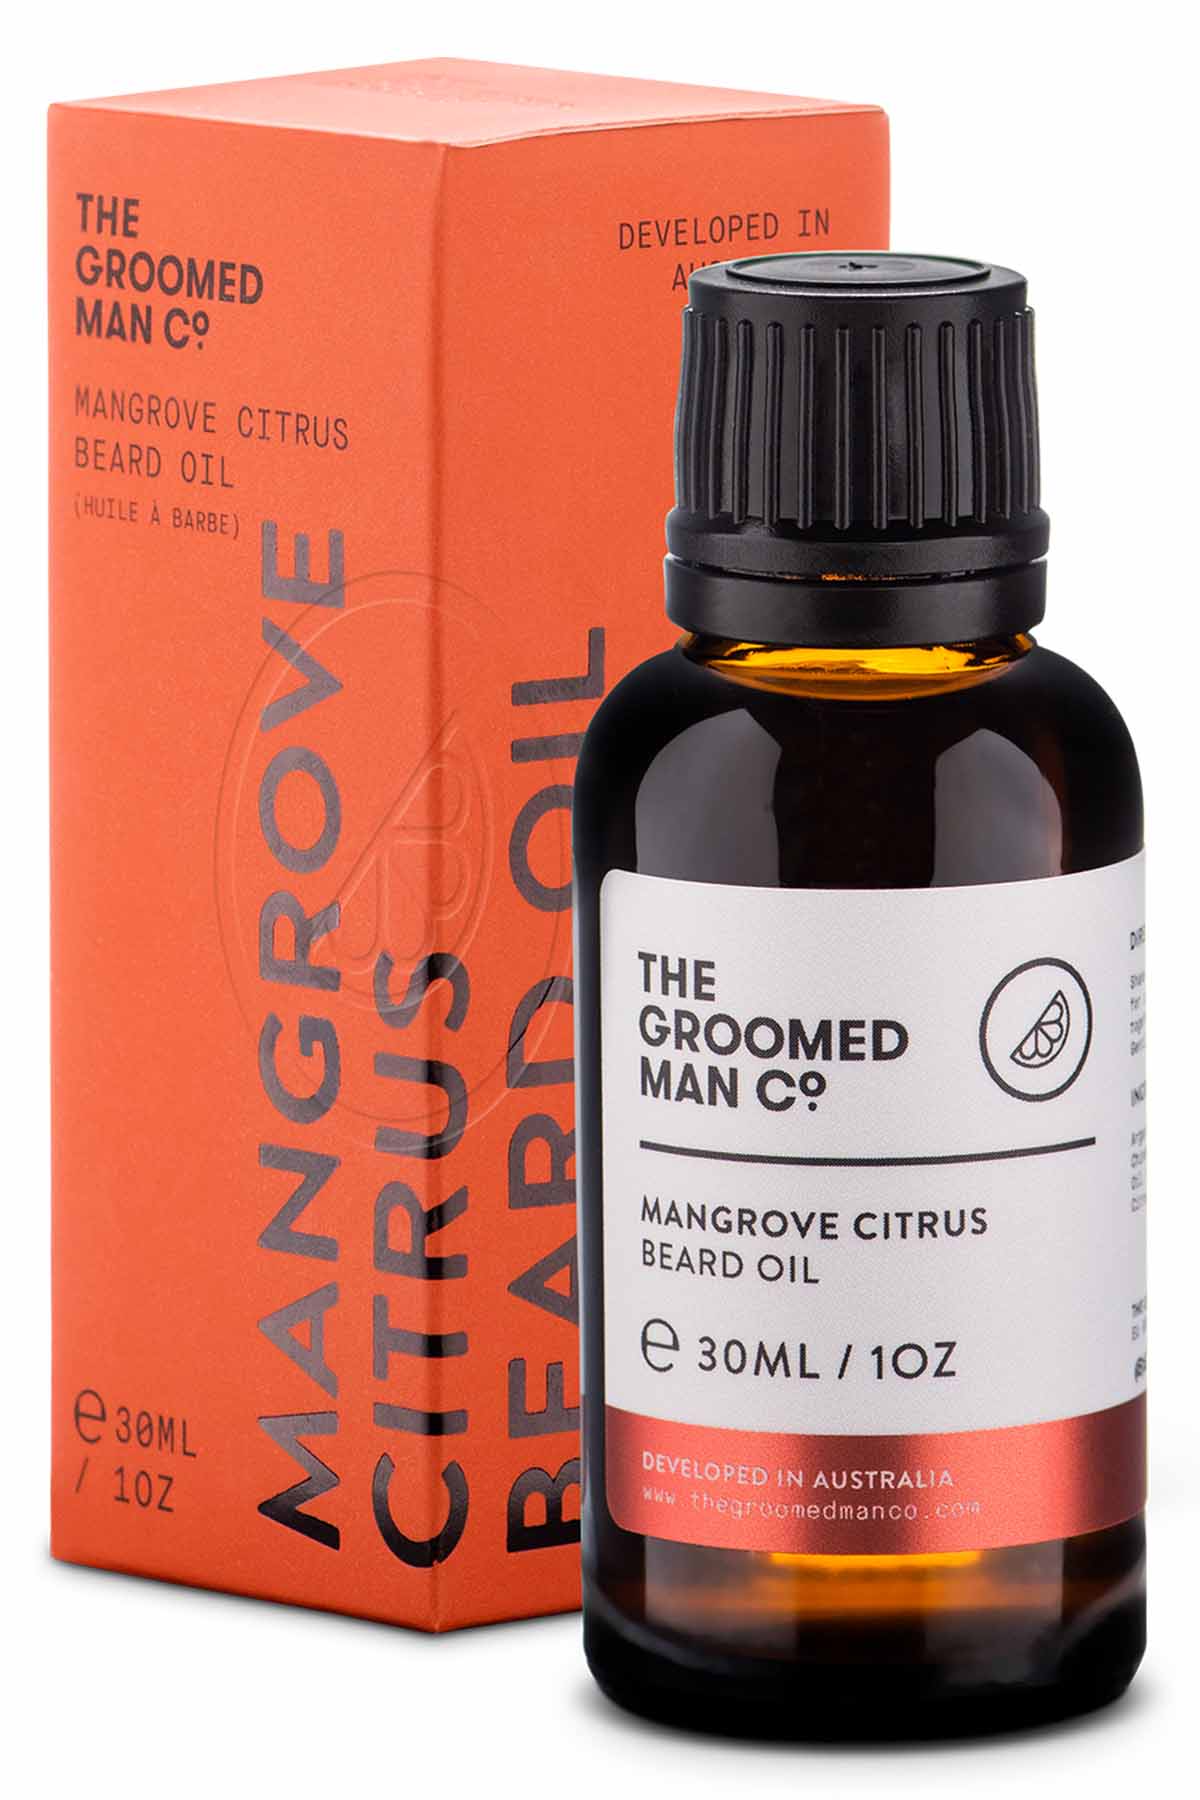 The Groomed Man Co. Mangrove Citrus Premium Beard Oil